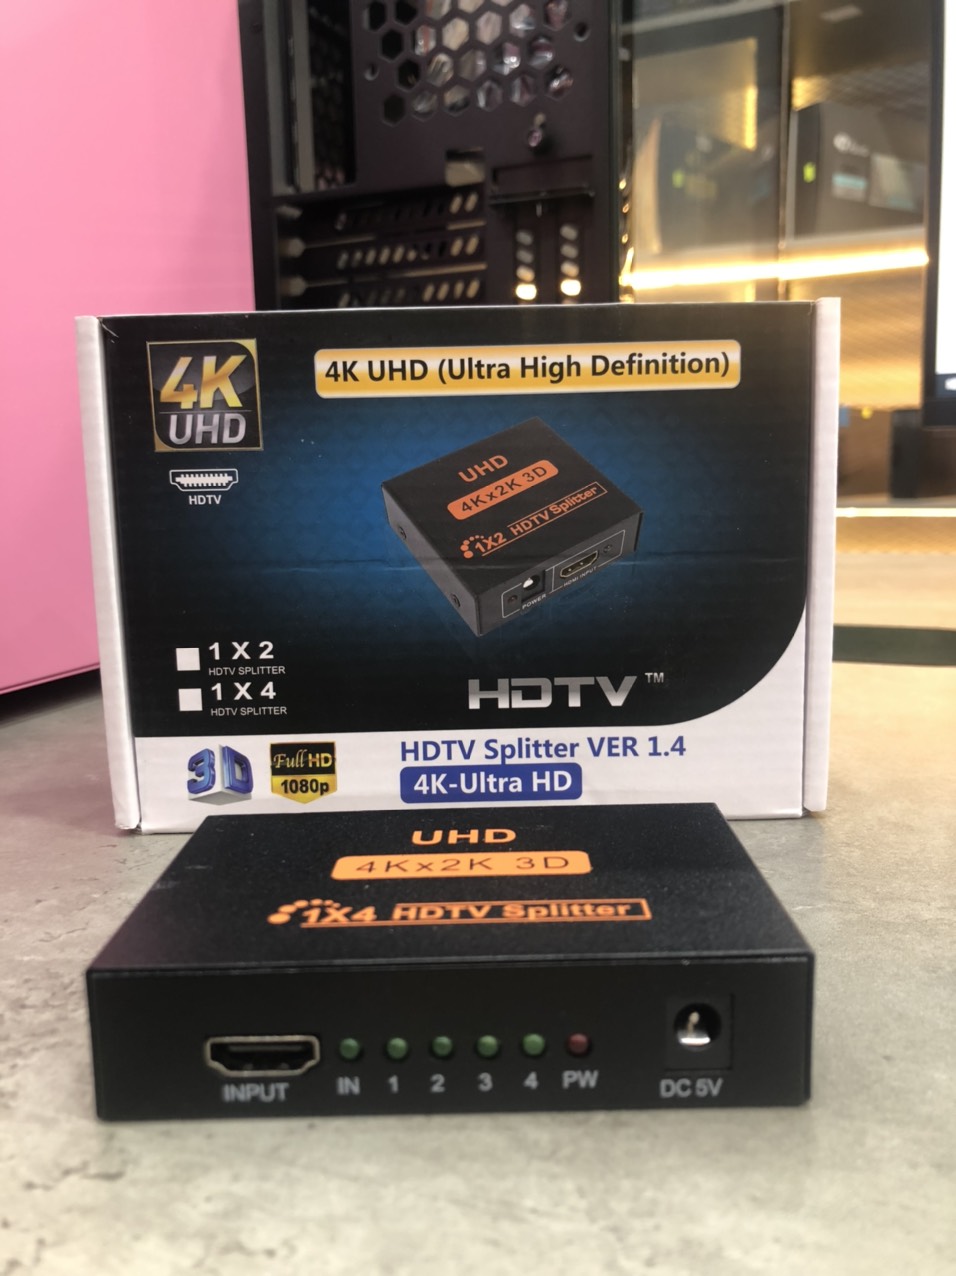 HDTV Splitter VER 1.4 4K -ULtra HD